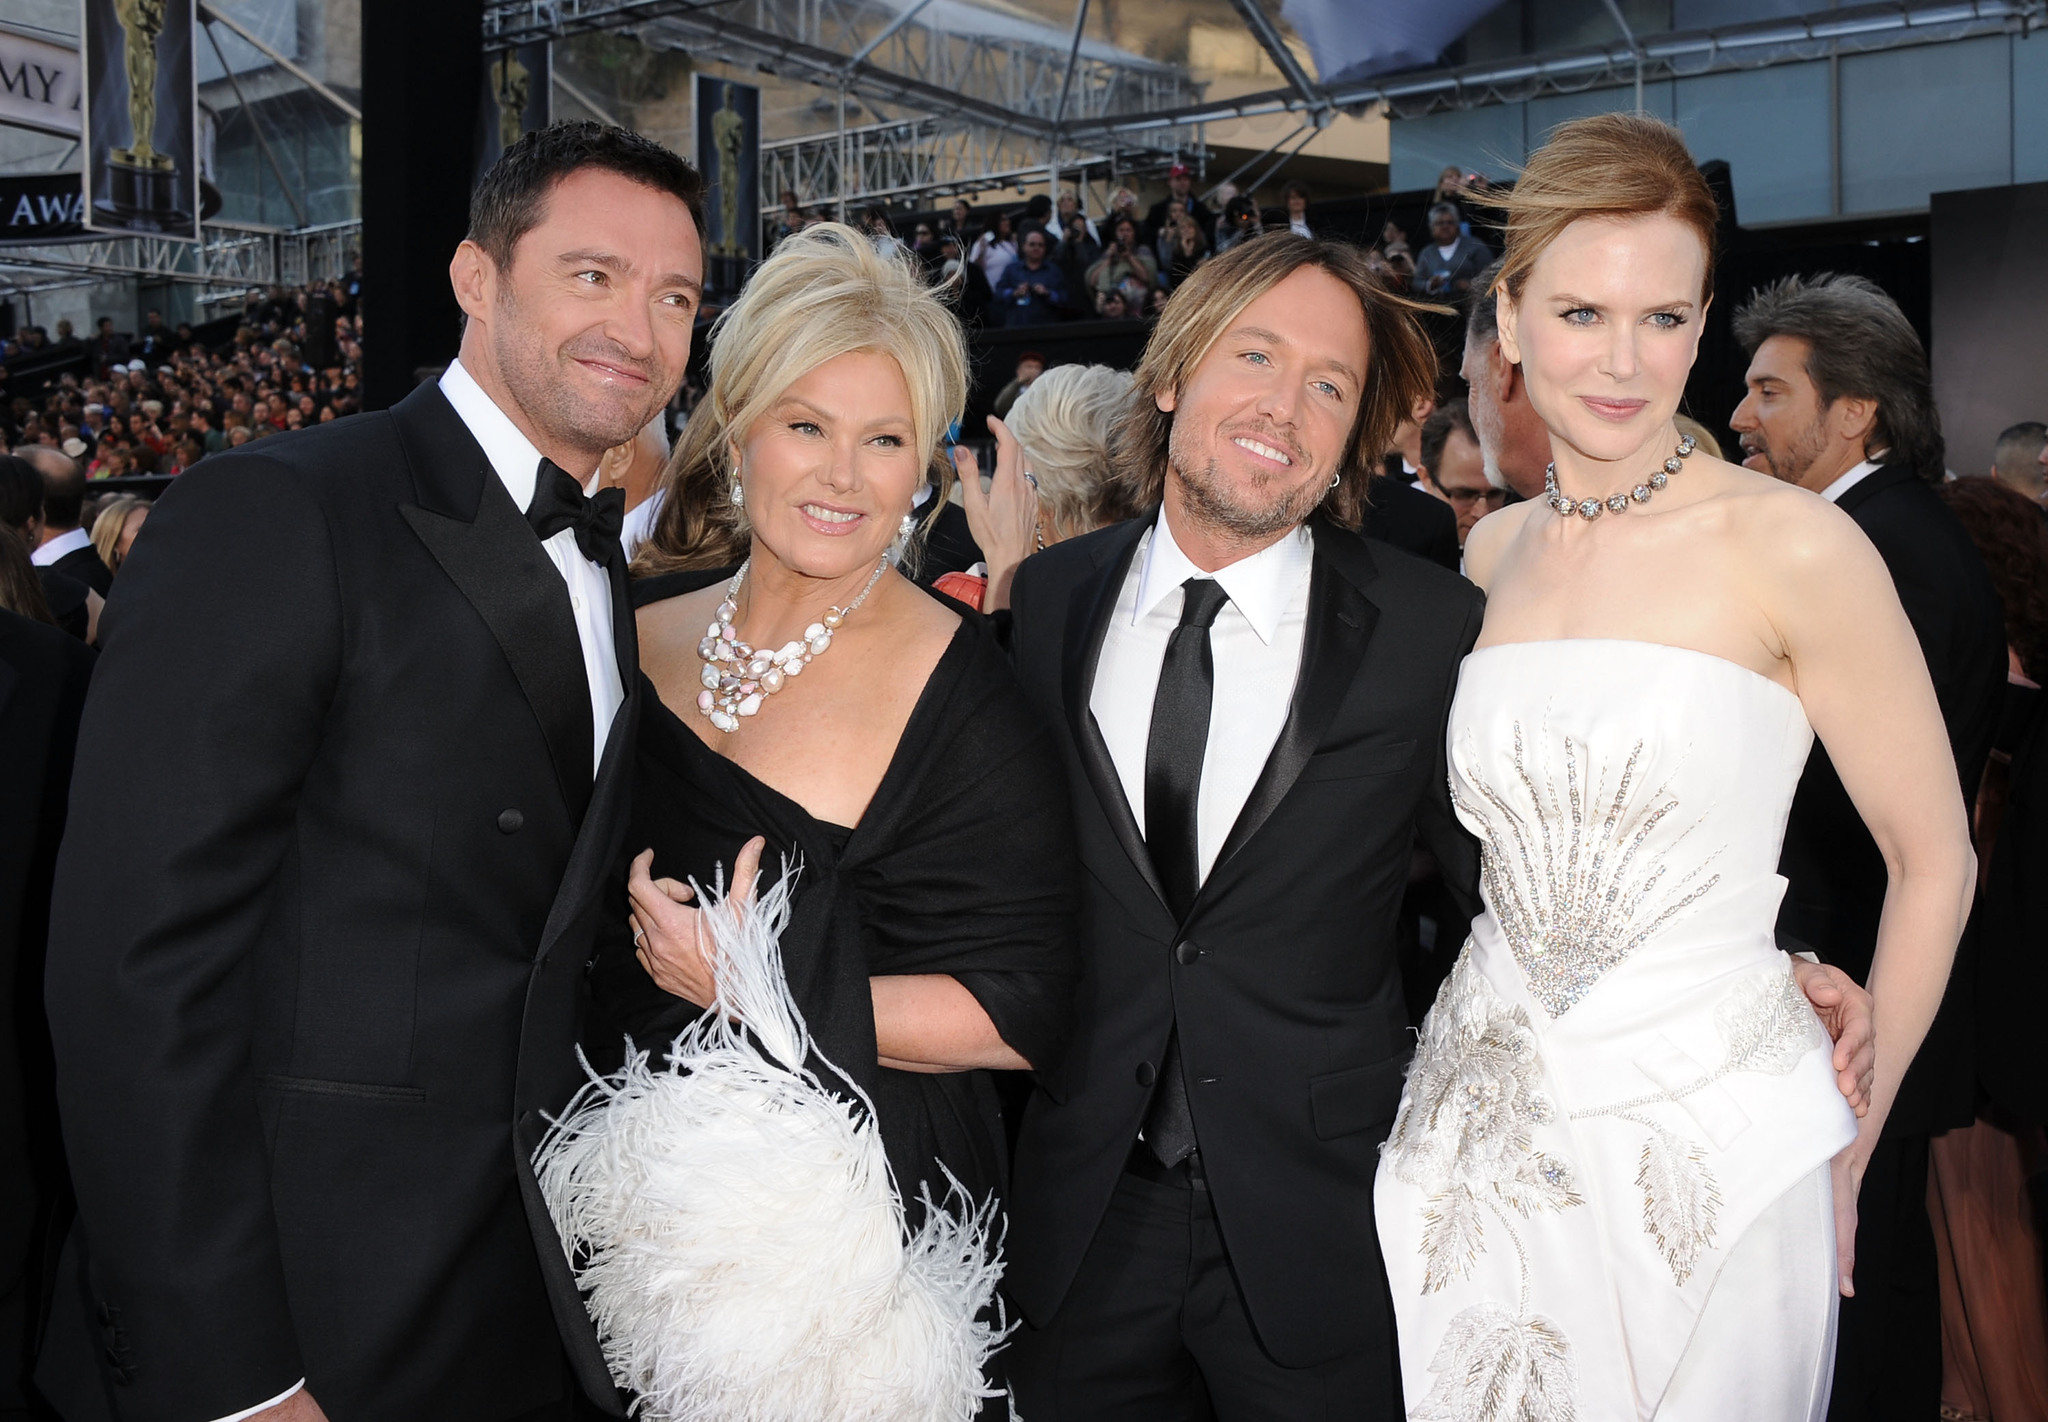 Nicole Kidman, Deborra-Lee Furness, Hugh Jackman and Keith Urban